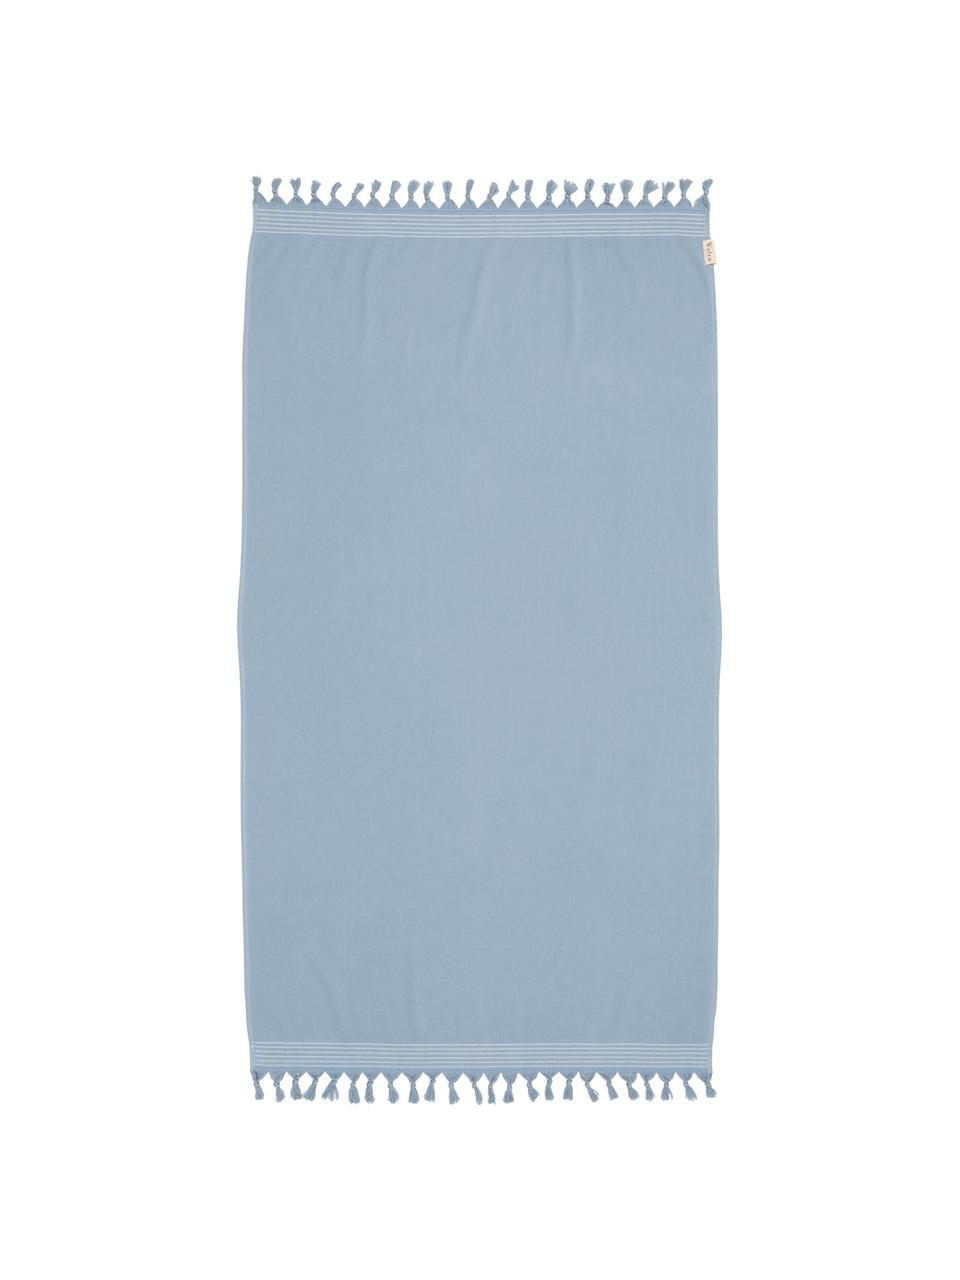 Hamamtuch Soft Cotton mit Frottee-Rückseite, Rückseite: Frottee, Blau, Weiss, 100 x 180 cm